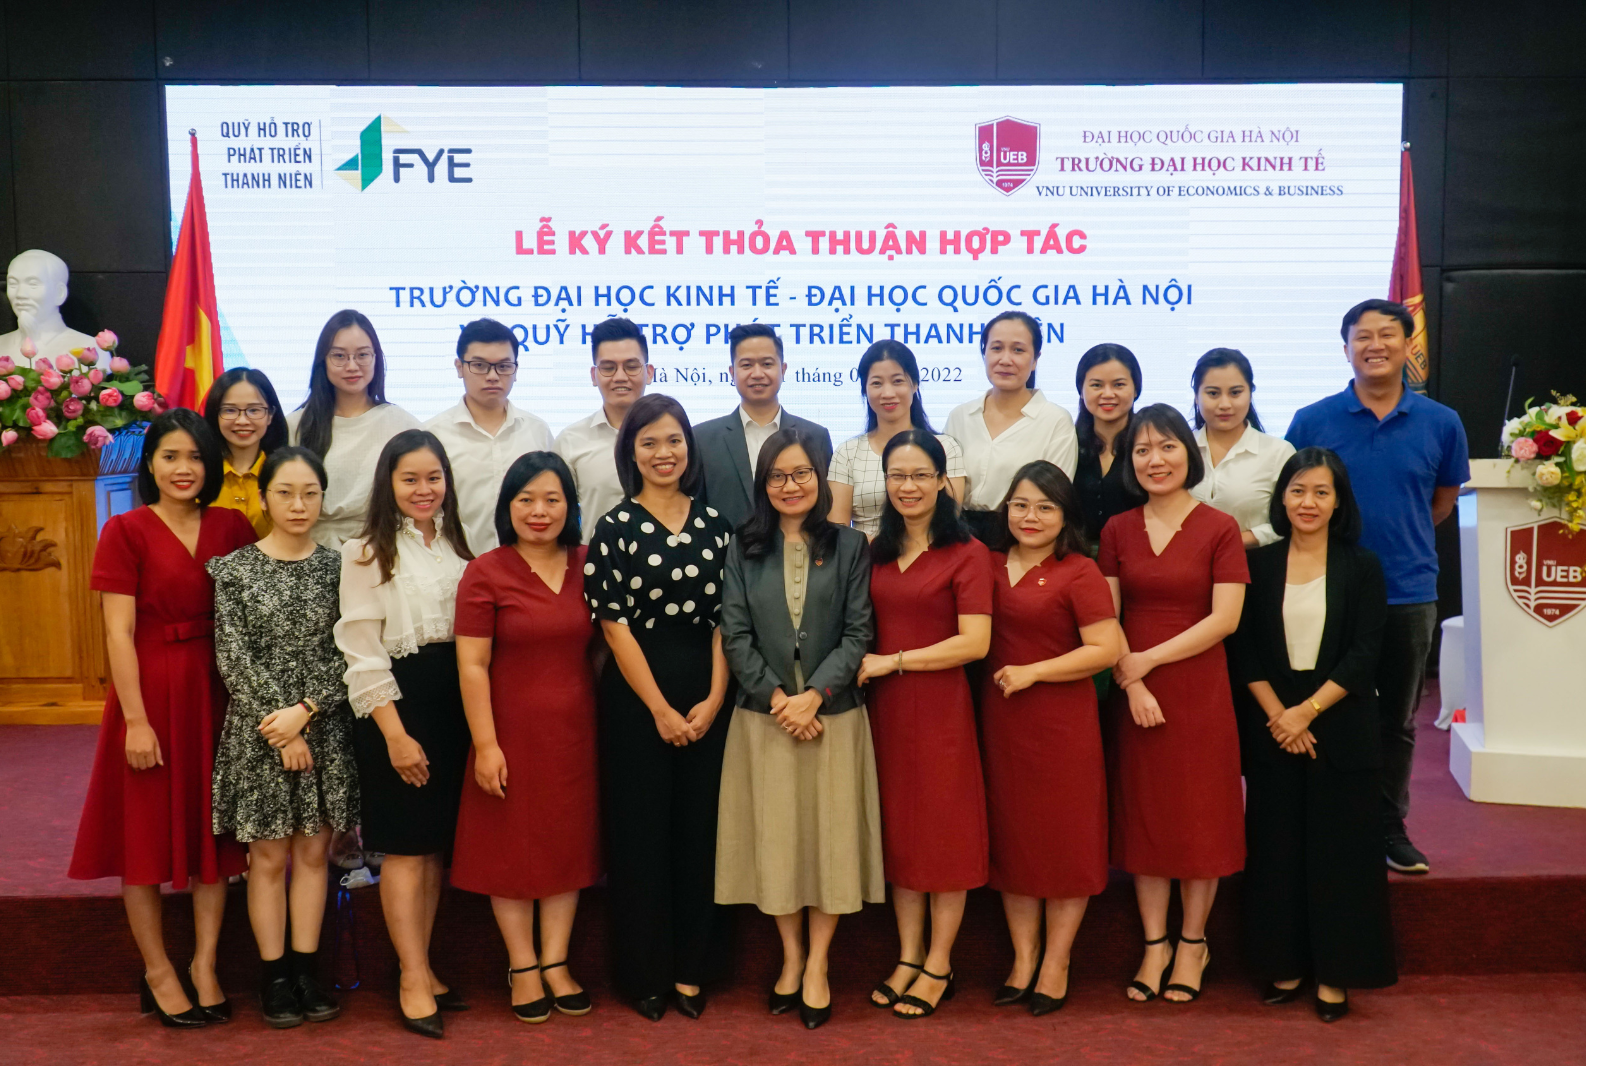 UEB hợp tác với Quỹ hỗ trợ phát triển thanh niên Việt Nam (FYE) 